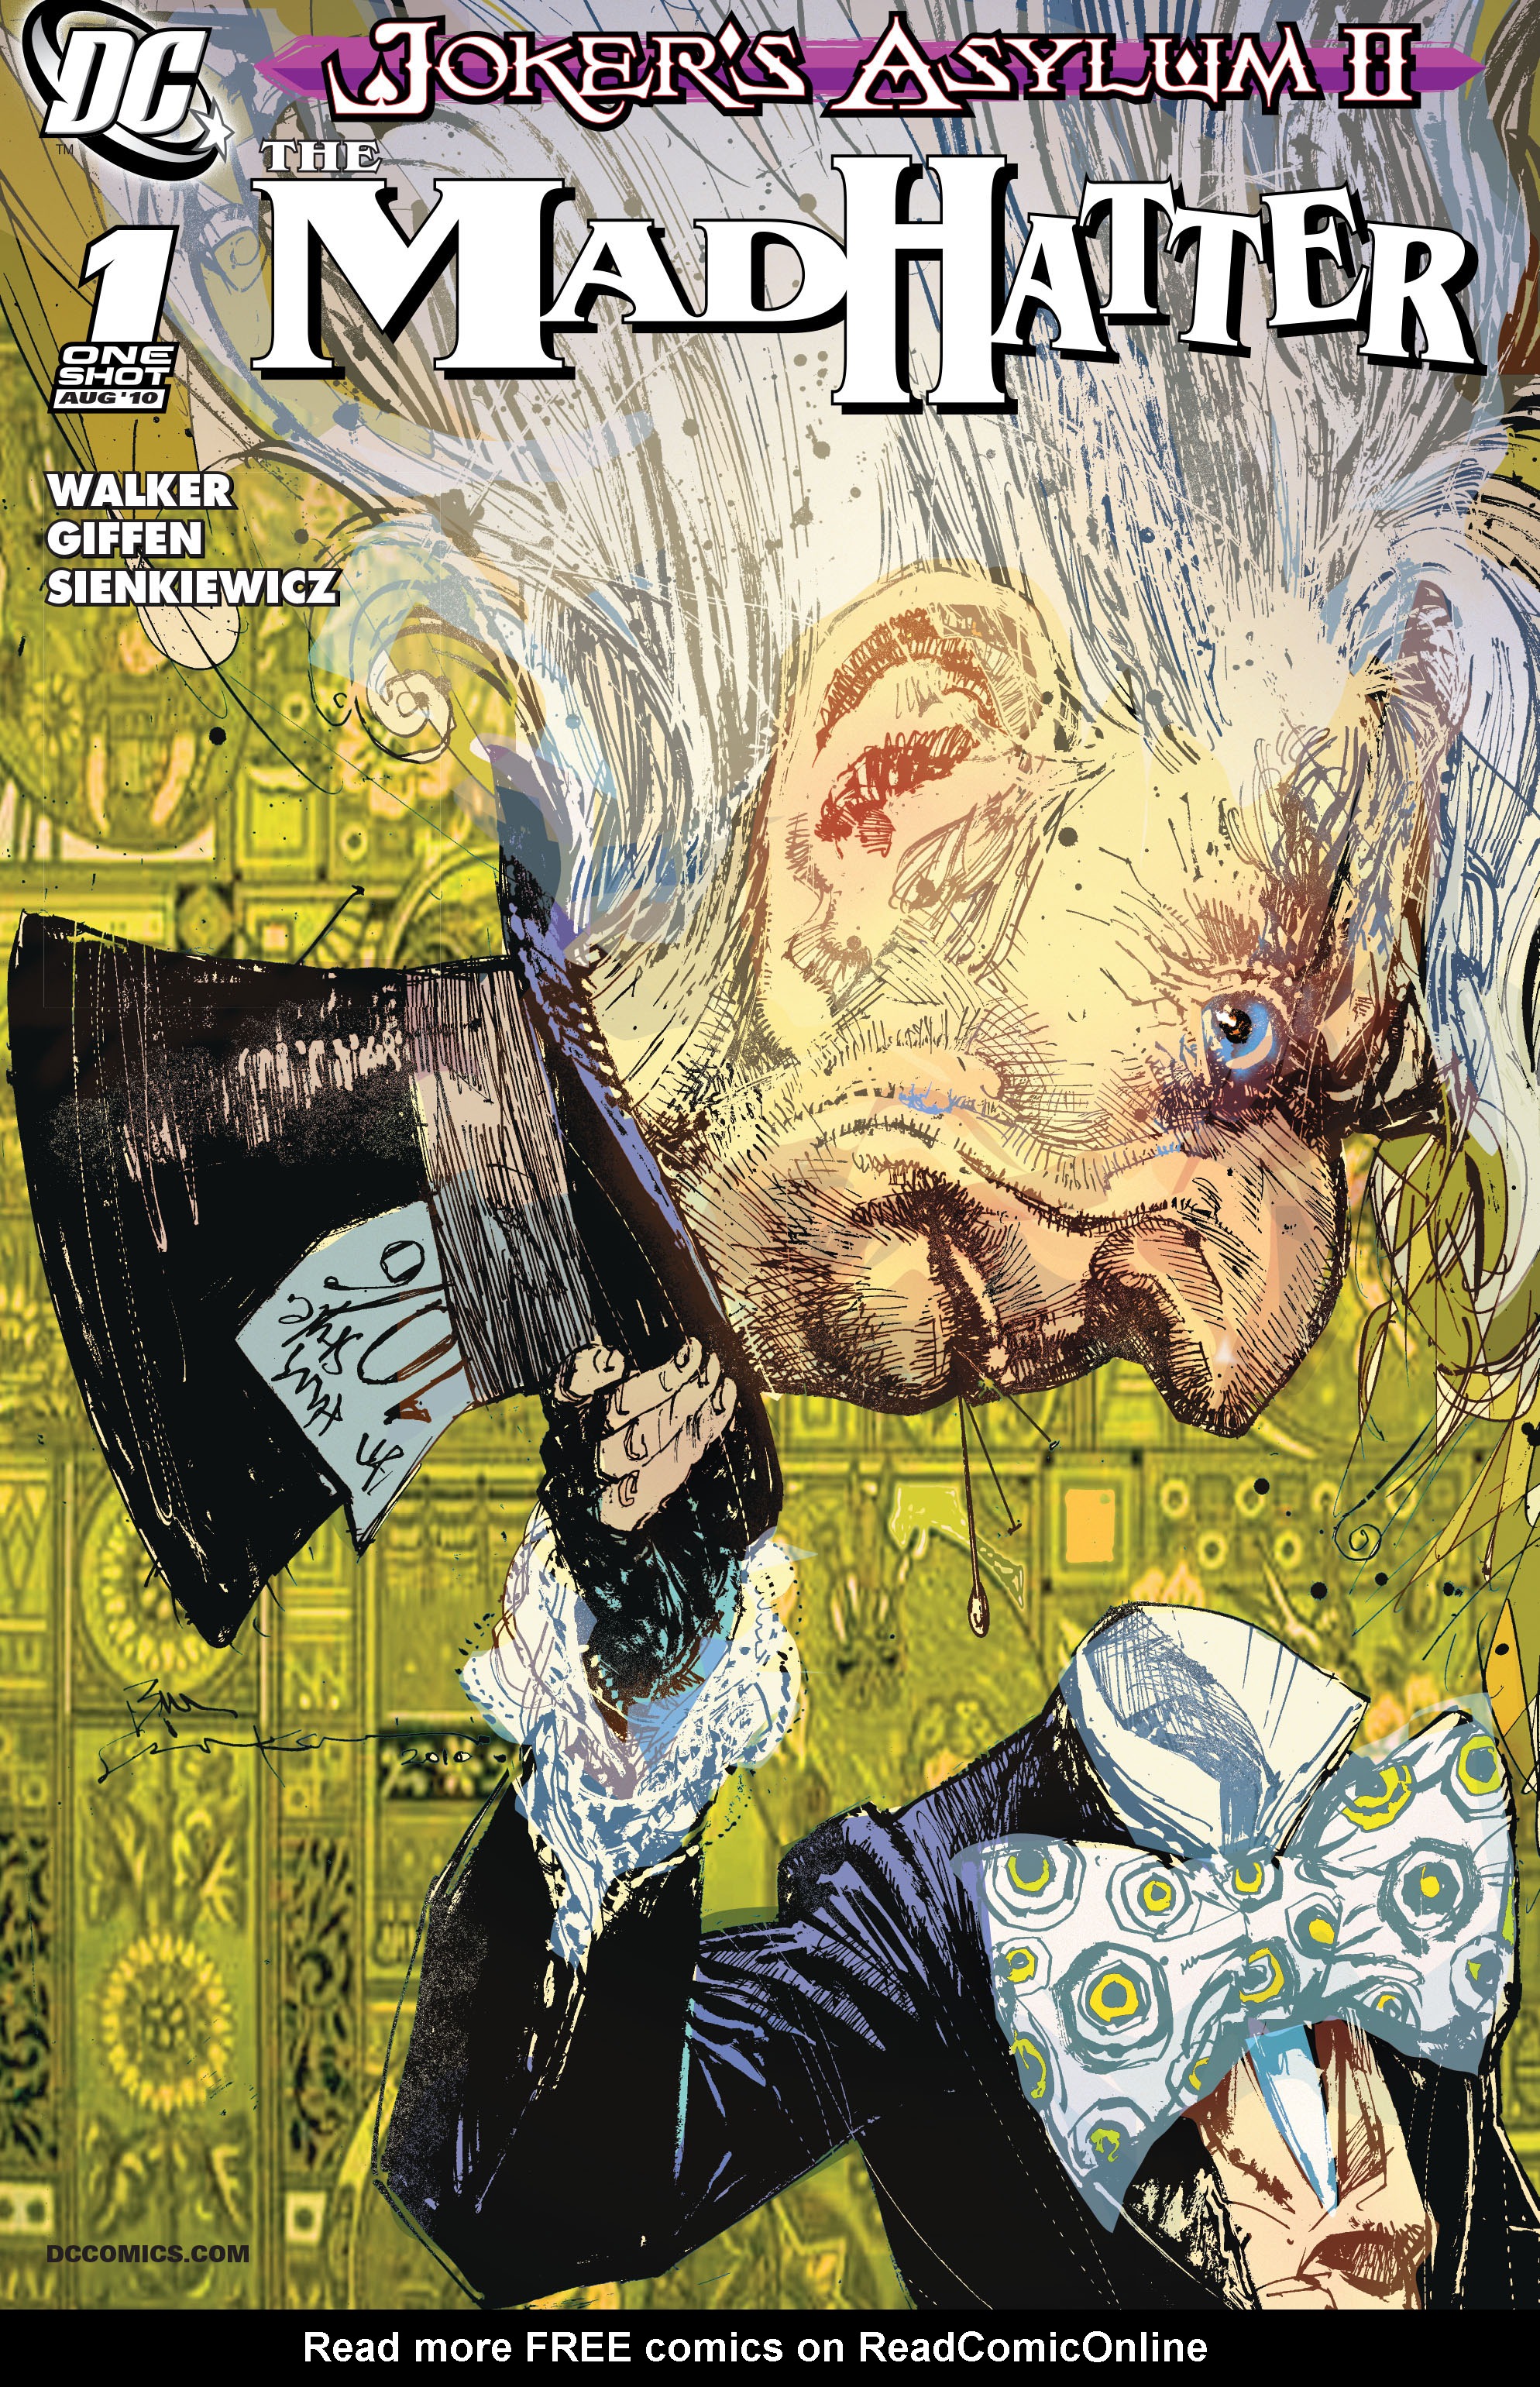 Read online Joker's Asylum II: Mad Hatter comic -  Issue # Full - 1